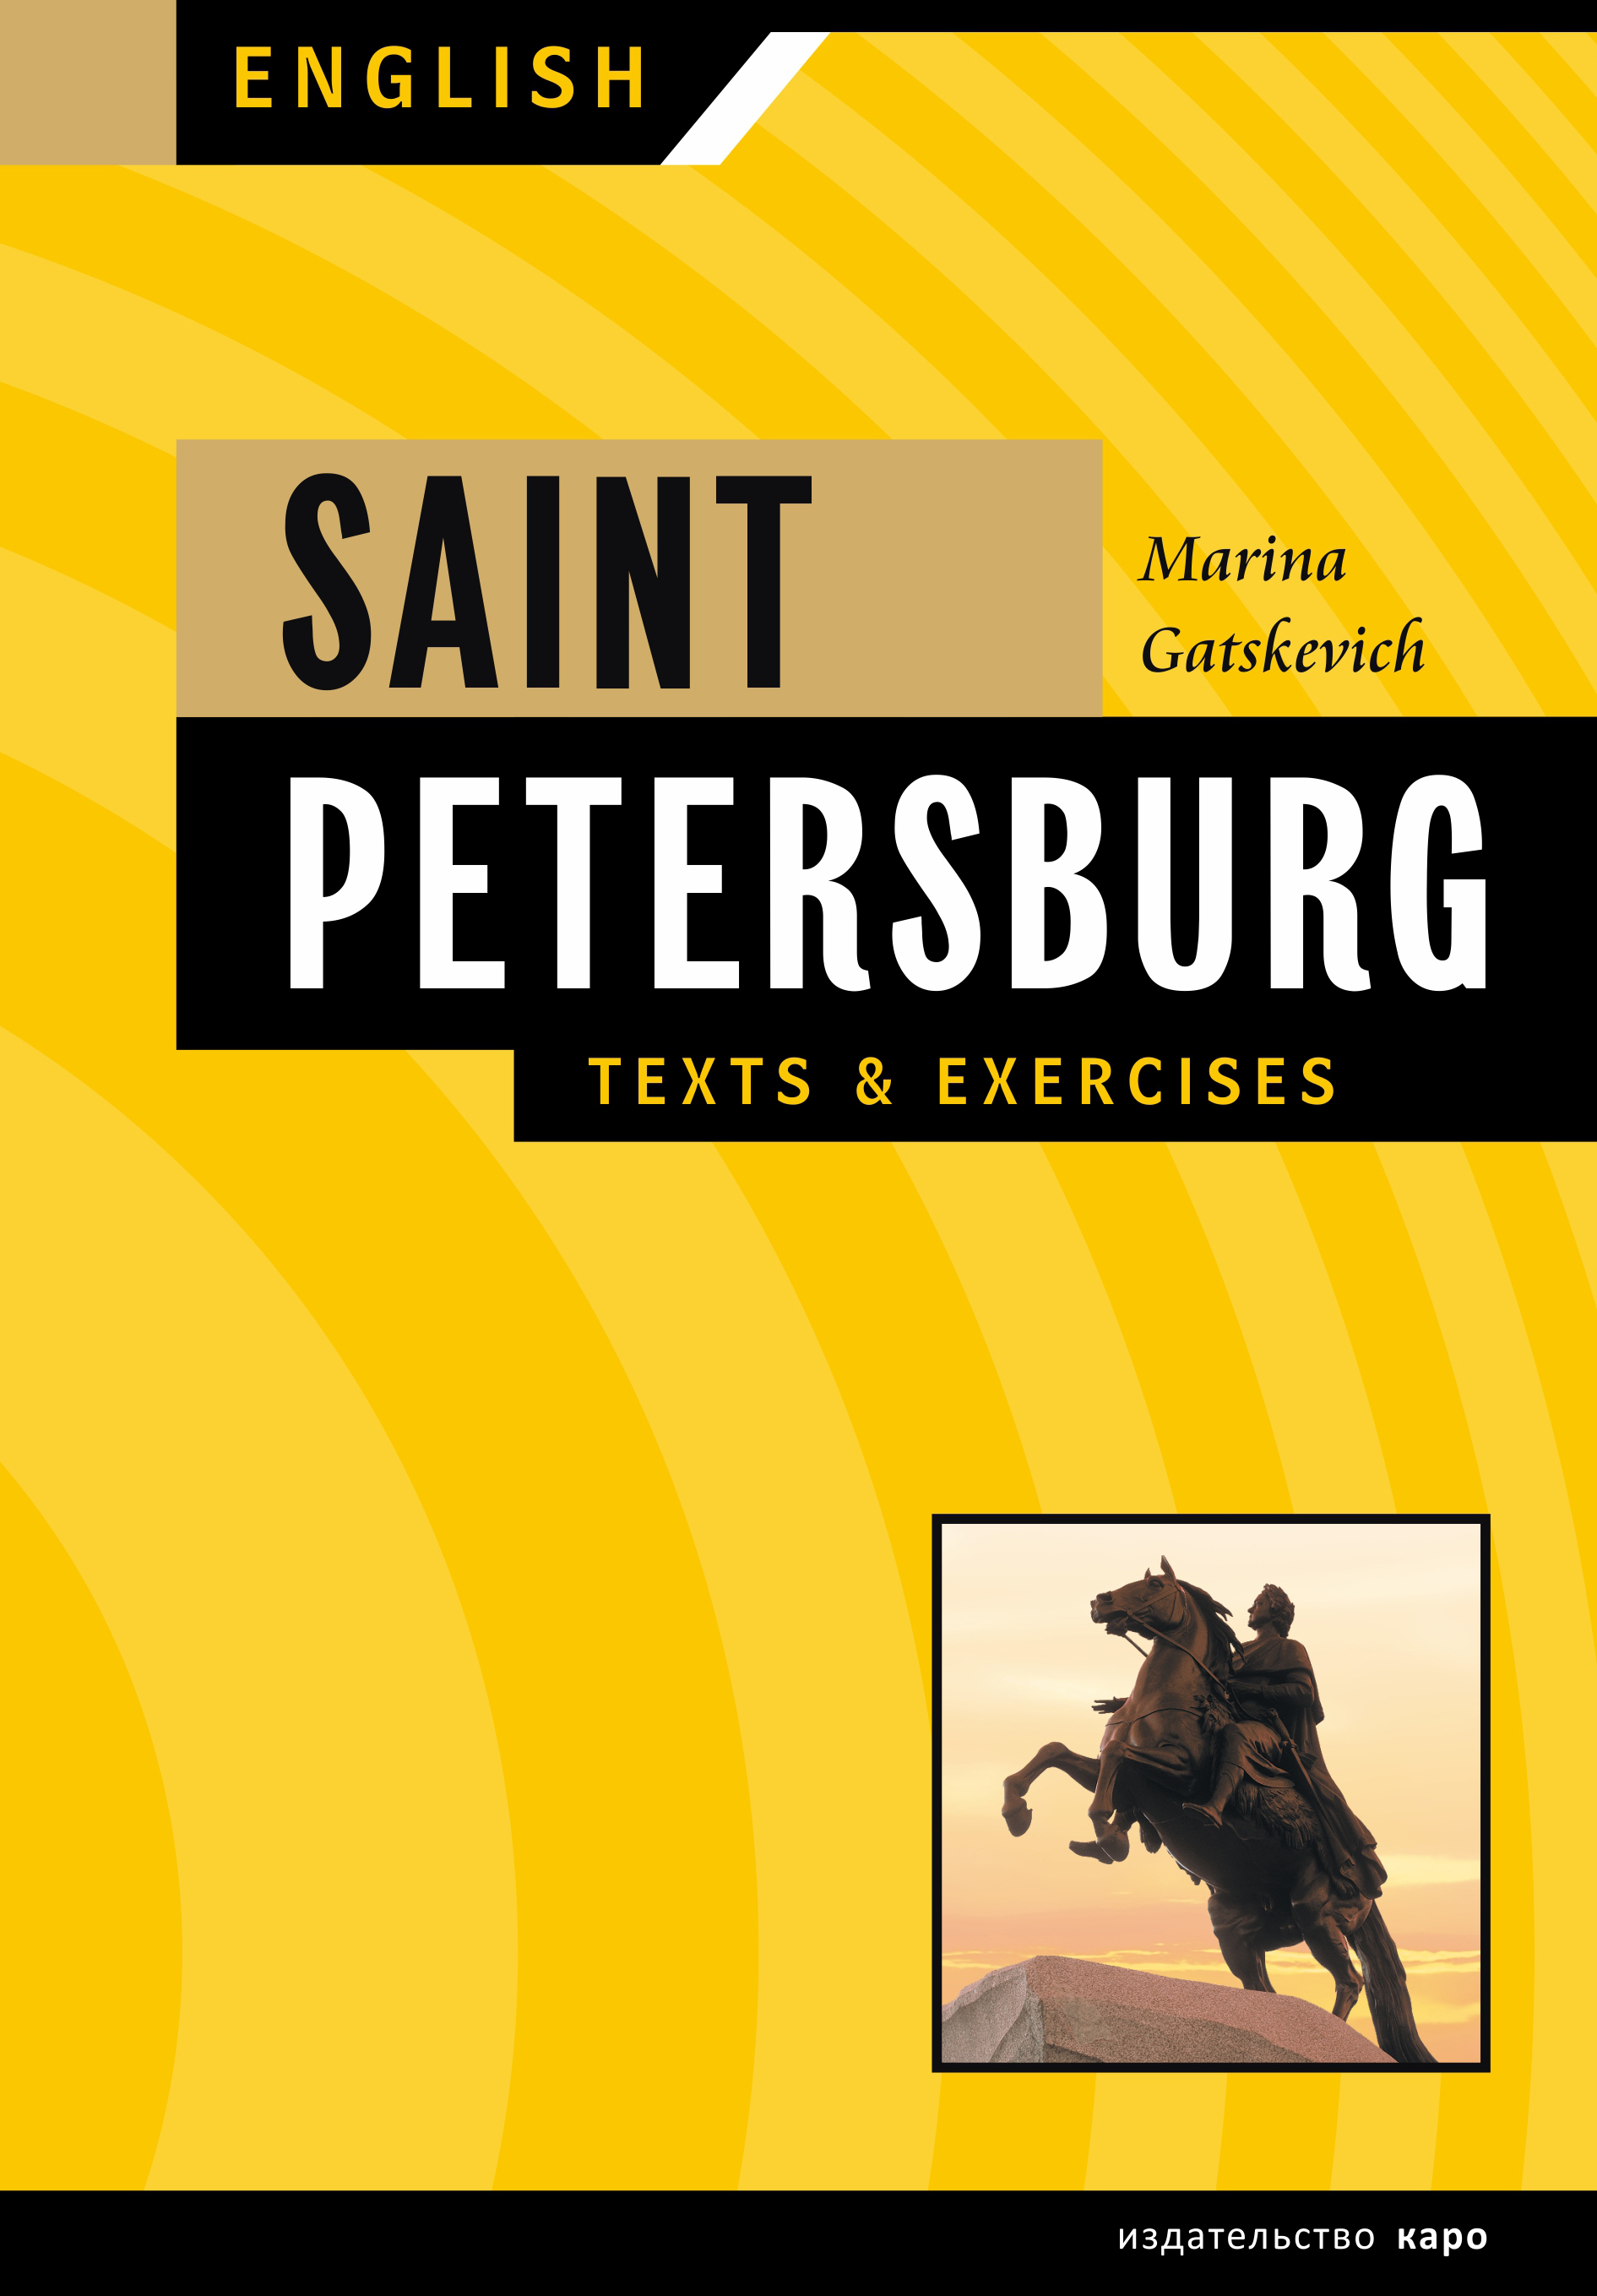 Санкт-Петербург. Тексты и упражнения. Книга 1 / Saint Petersburg: Texts&Exercises